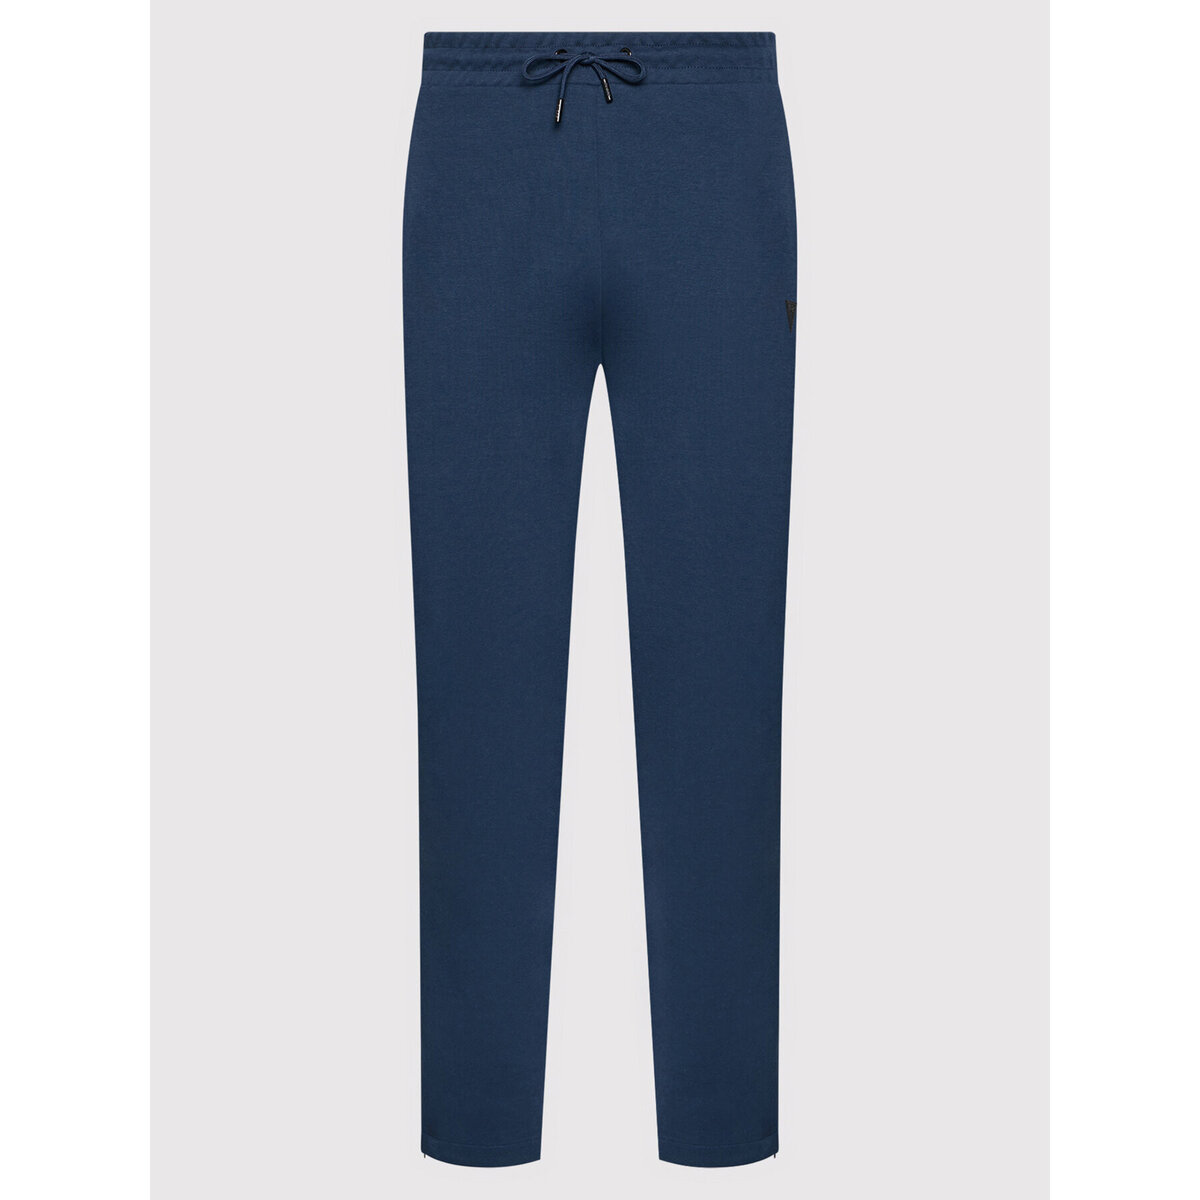 Pánské teplákové kalhoty Z62OCX - G7R1 - Tmavě modrá - Guess, tmavě modrá M i10_P51120_1:22_2:91_